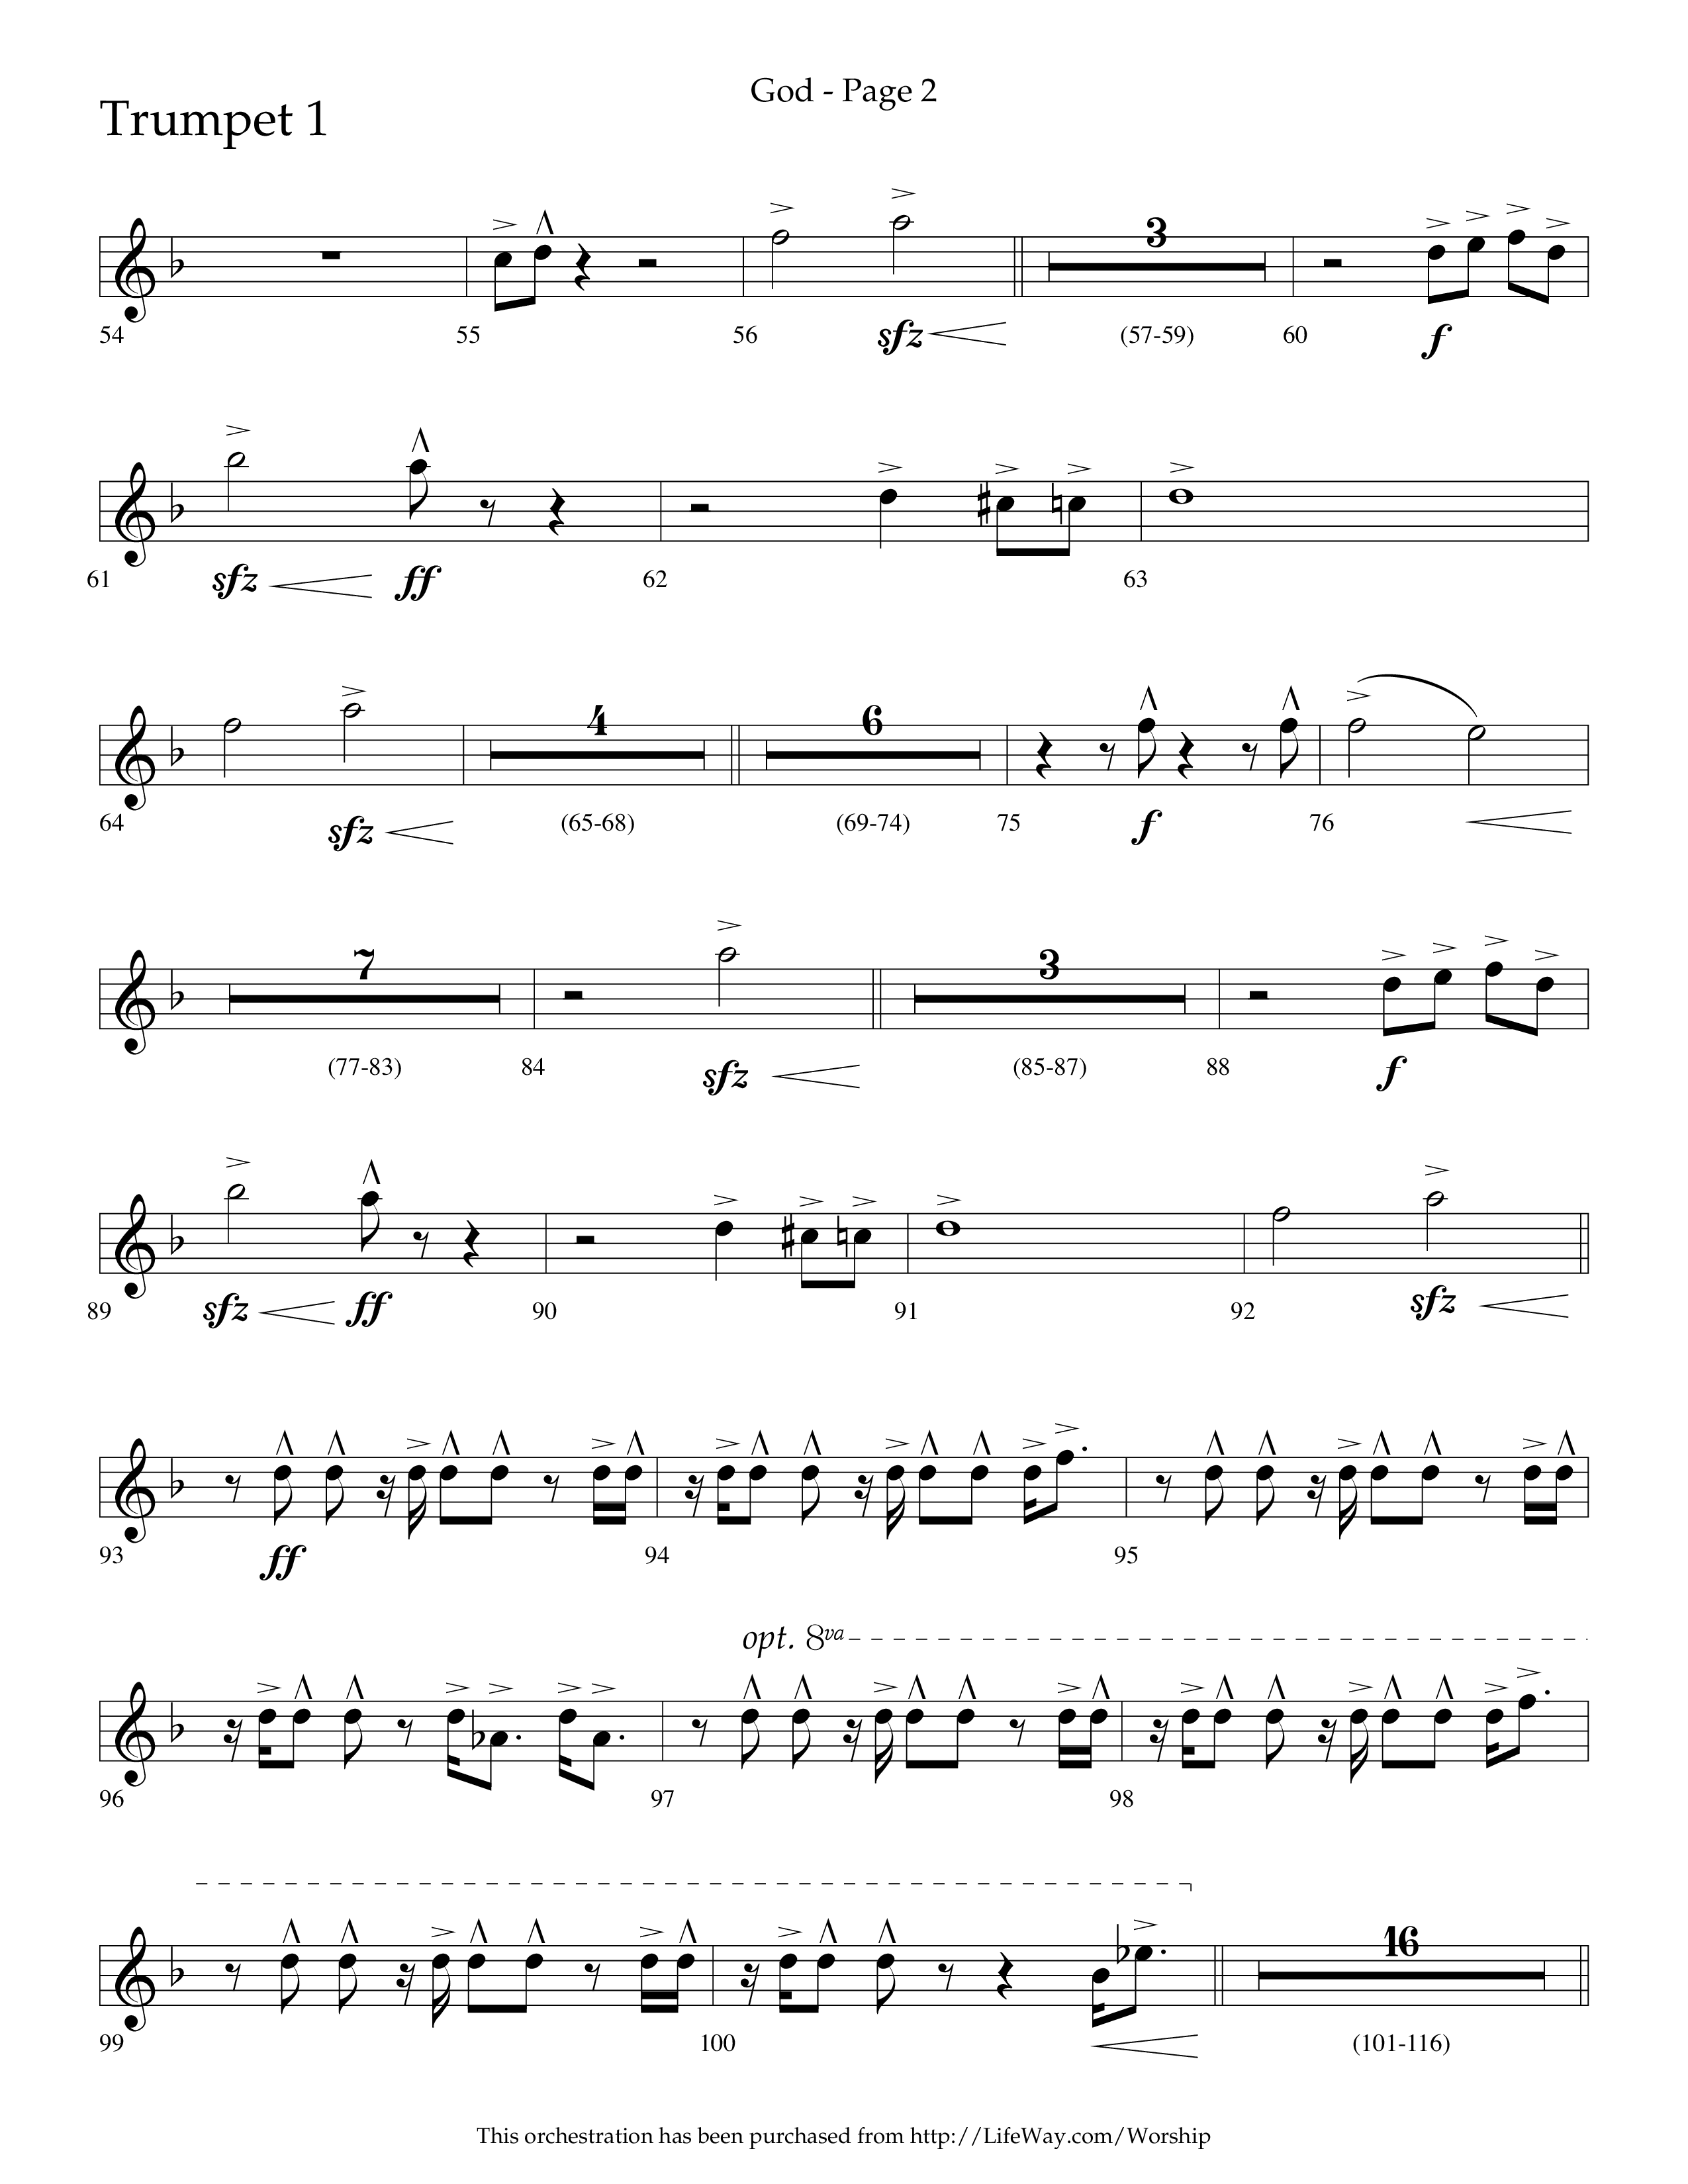 God (Choral Anthem SATB) Trumpet 1 (Lifeway Choral / Arr. Cliff Duren)